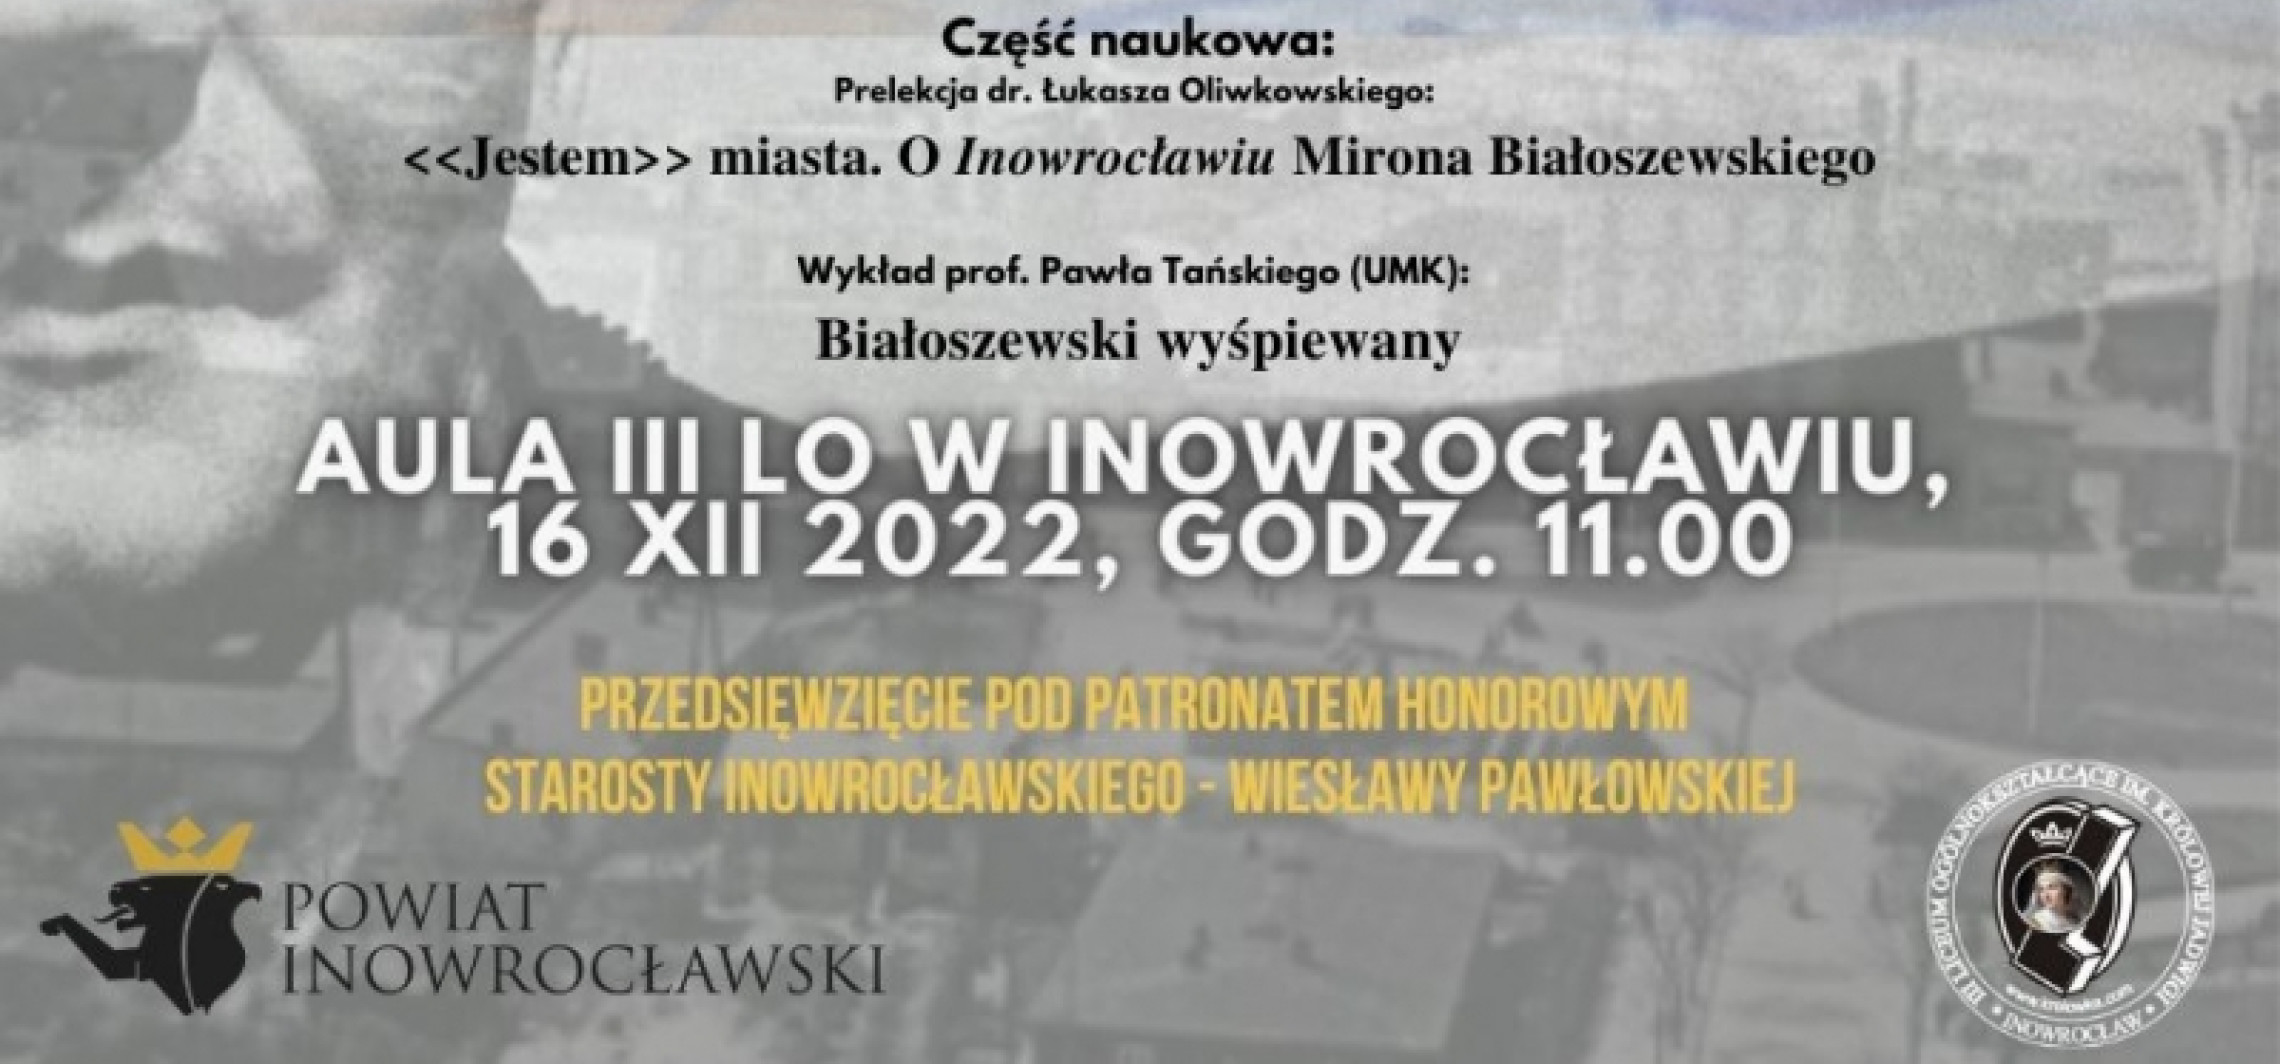 Inowrocław - Spektakl, prelekcje i wystawa zdjęć. "Inowrocław Niewiadomy” opisany przez Białoszewskiego